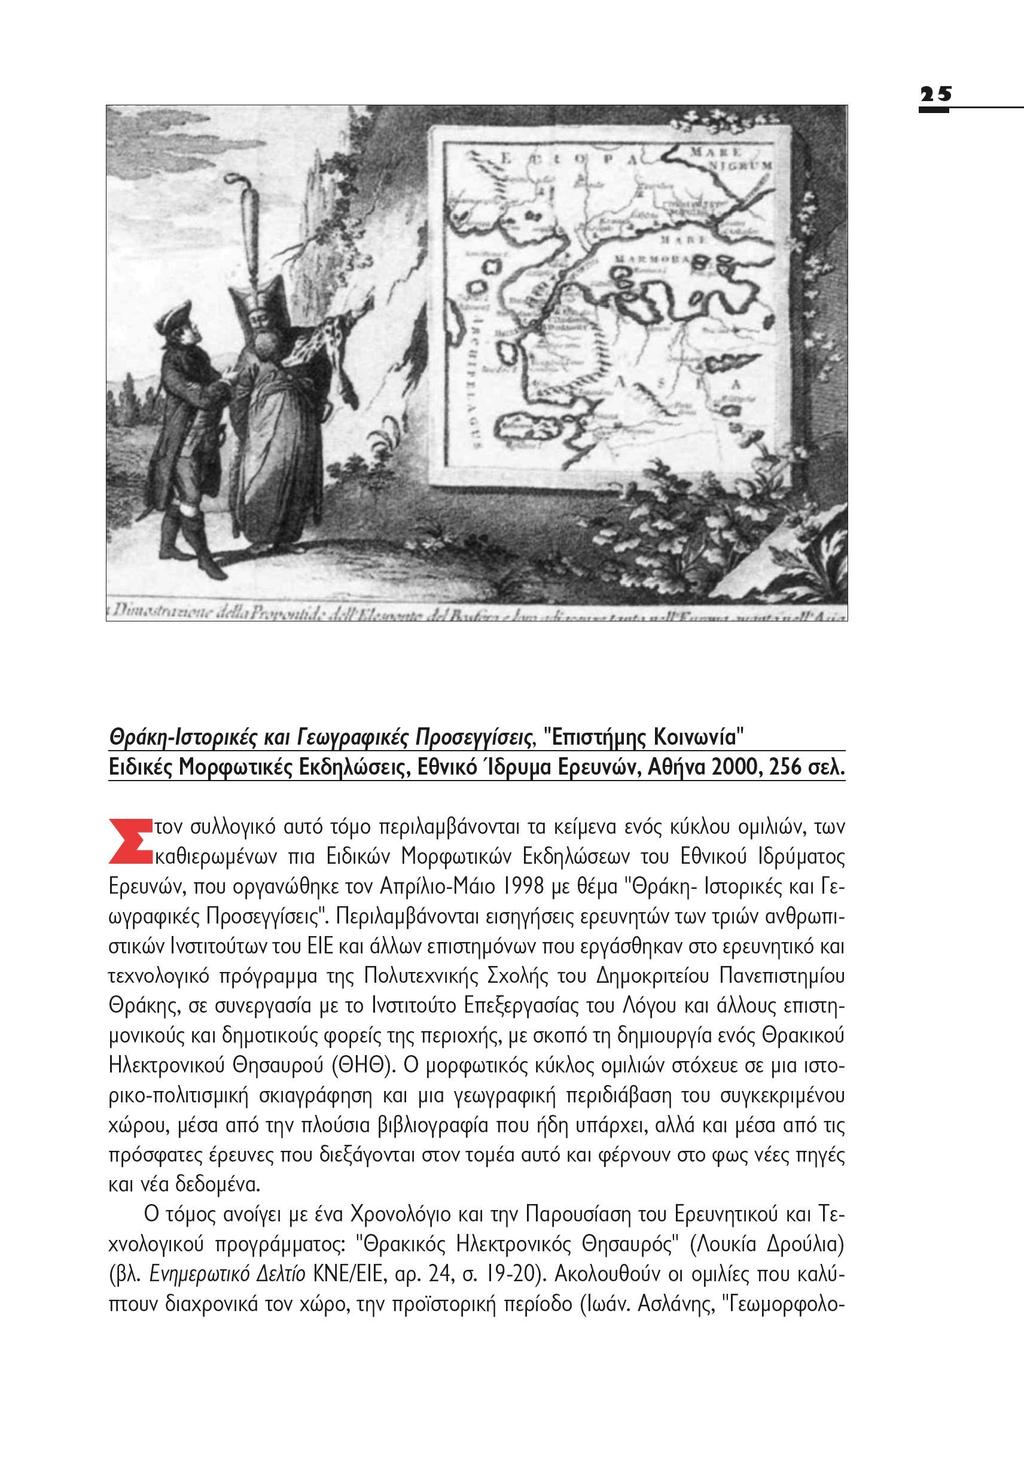 Θράκη-Ιστορικές και Γεωγραφικές Προσεγγίσεις, "Επιστήμης Κοινωνία" Ειδικές Μορφωτικές Εκδηλώσεις, Εθνικό Ίδρυμα Ερευνών, Αθήνα 2000,256 σελ.